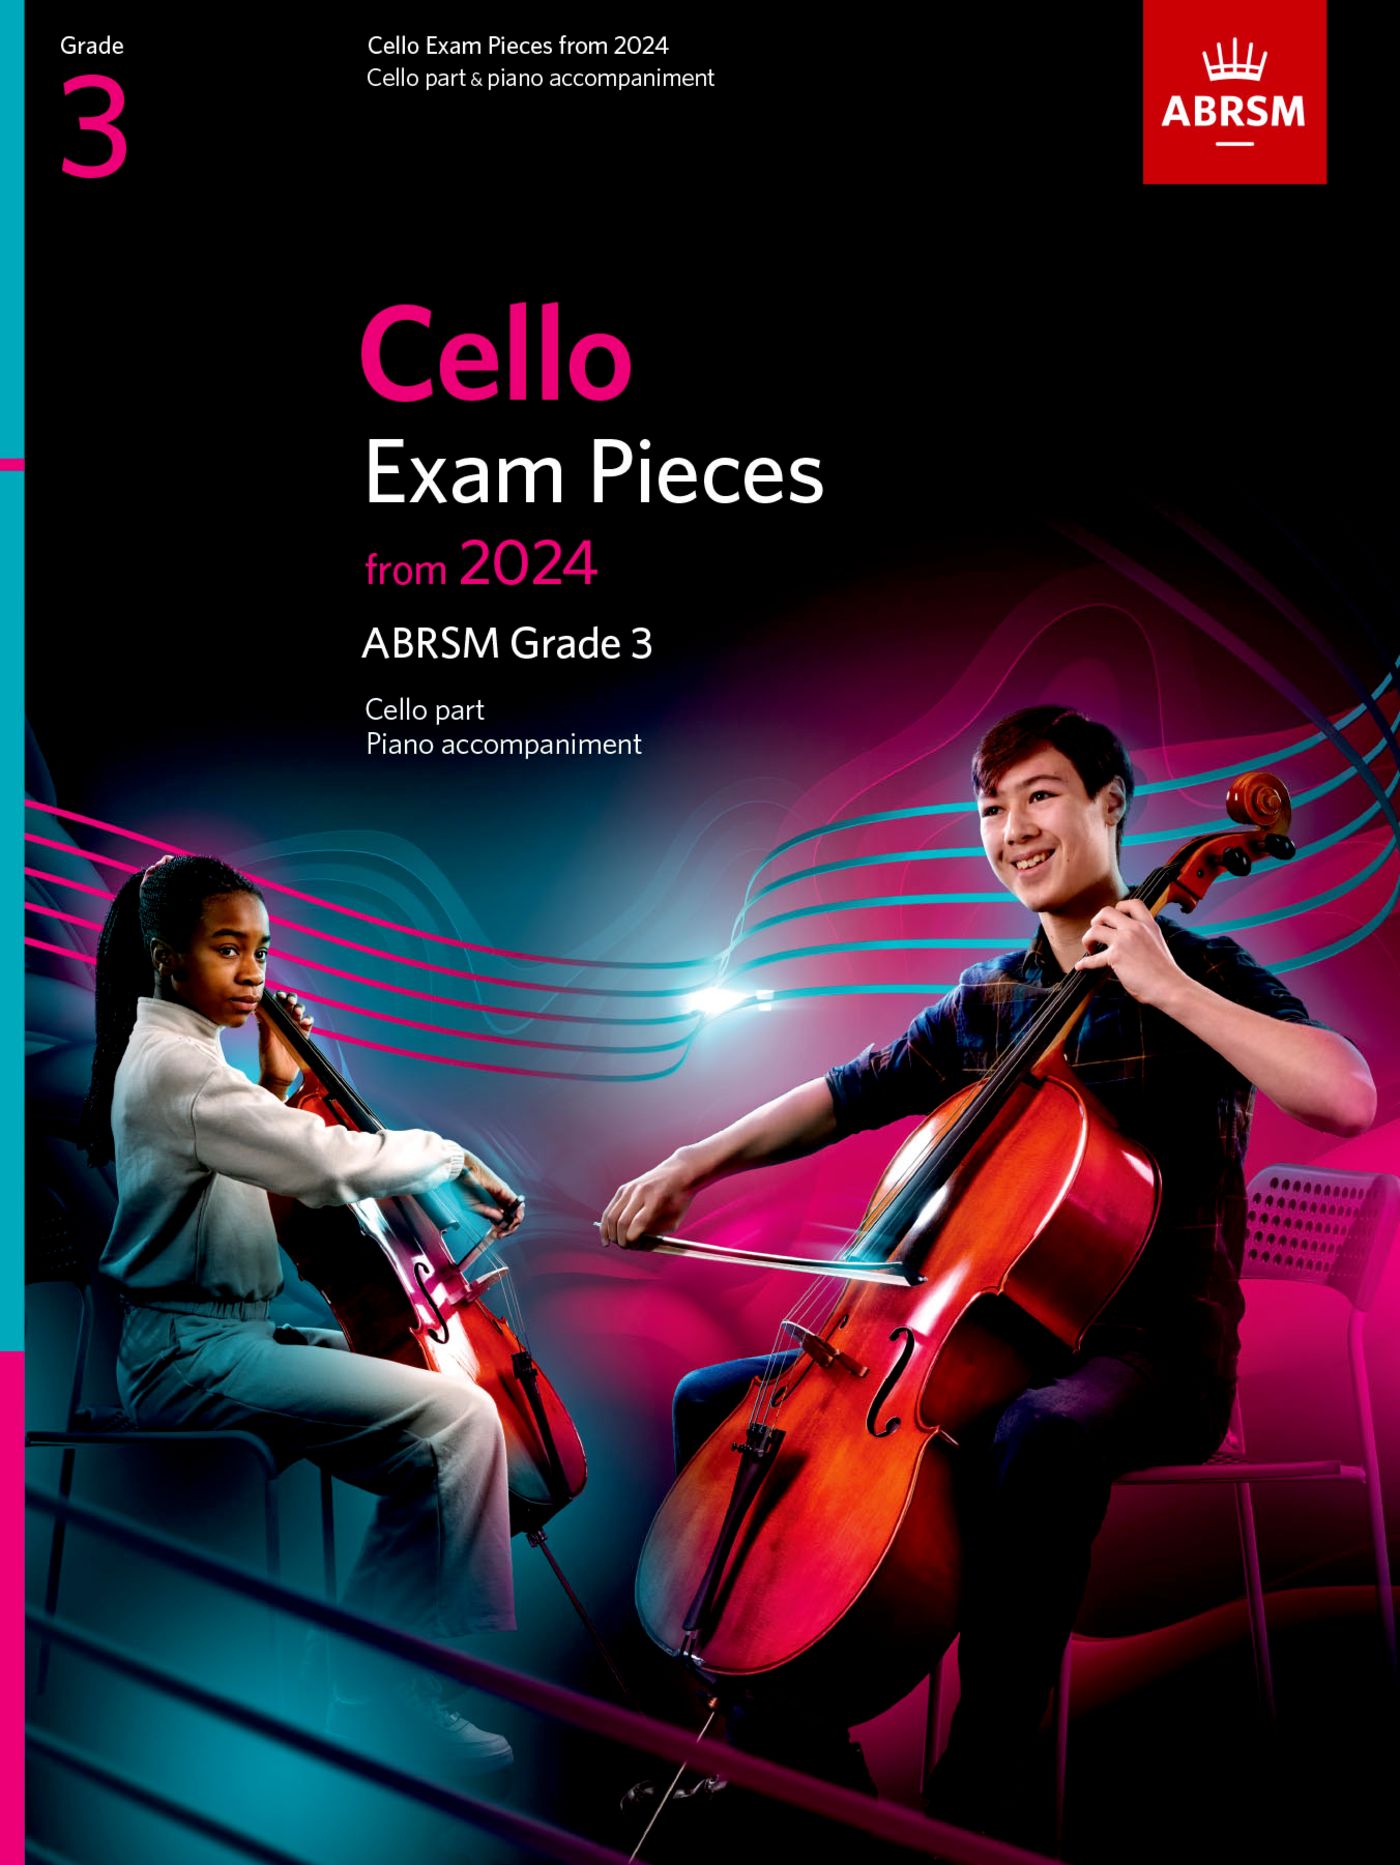 ABRSM Cello Exam Pieces 2024, Grade 3